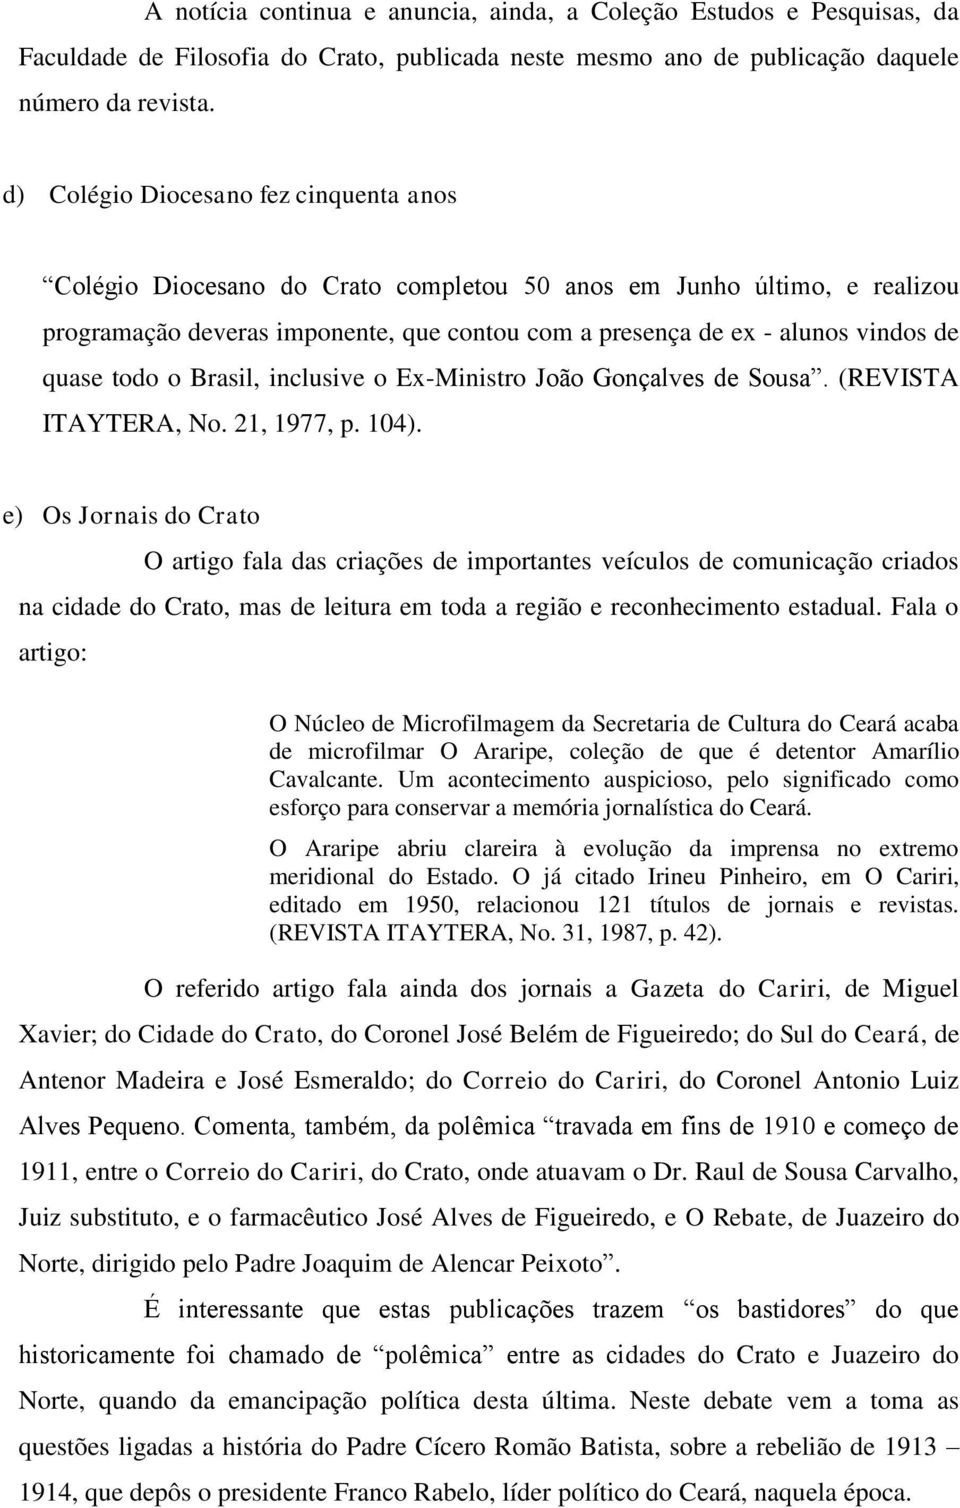 quase todo o Brasil, inclusive o Ex-Ministro João Gonçalves de Sousa. (REVISTA ITAYTERA, No. 21, 1977, p. 104).